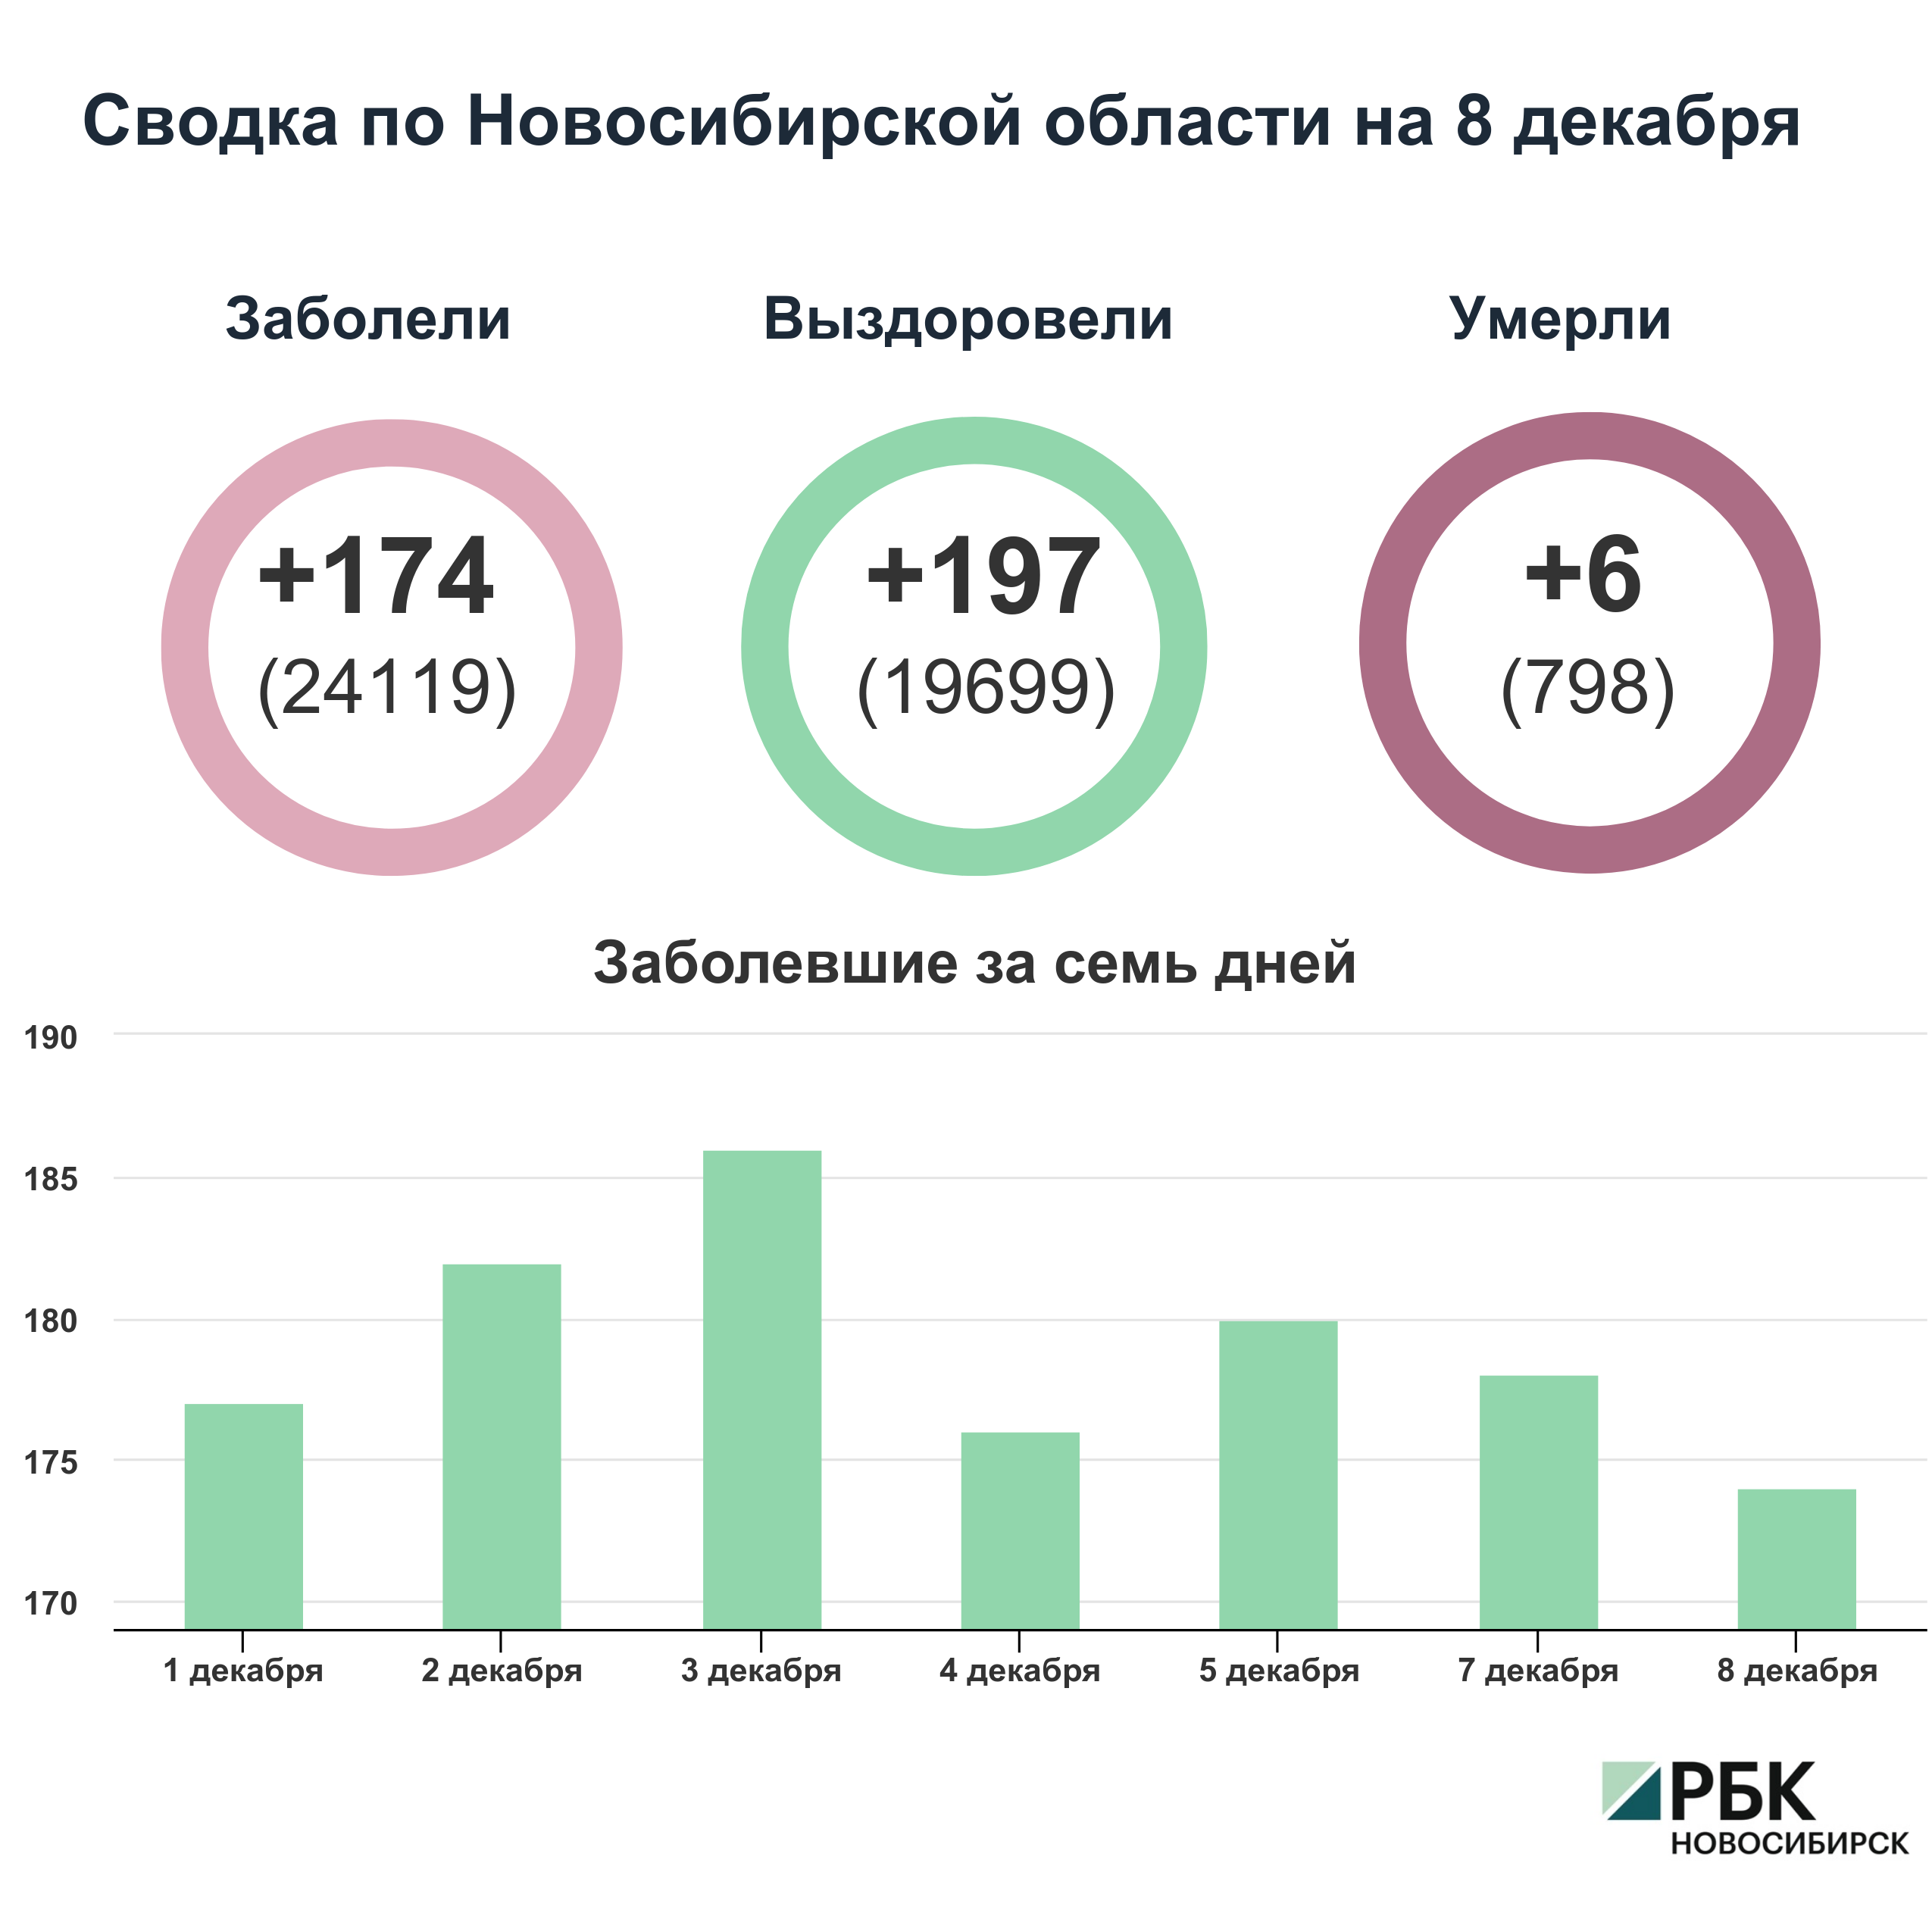 Коронавирус в Новосибирске: сводка на 8 декабря